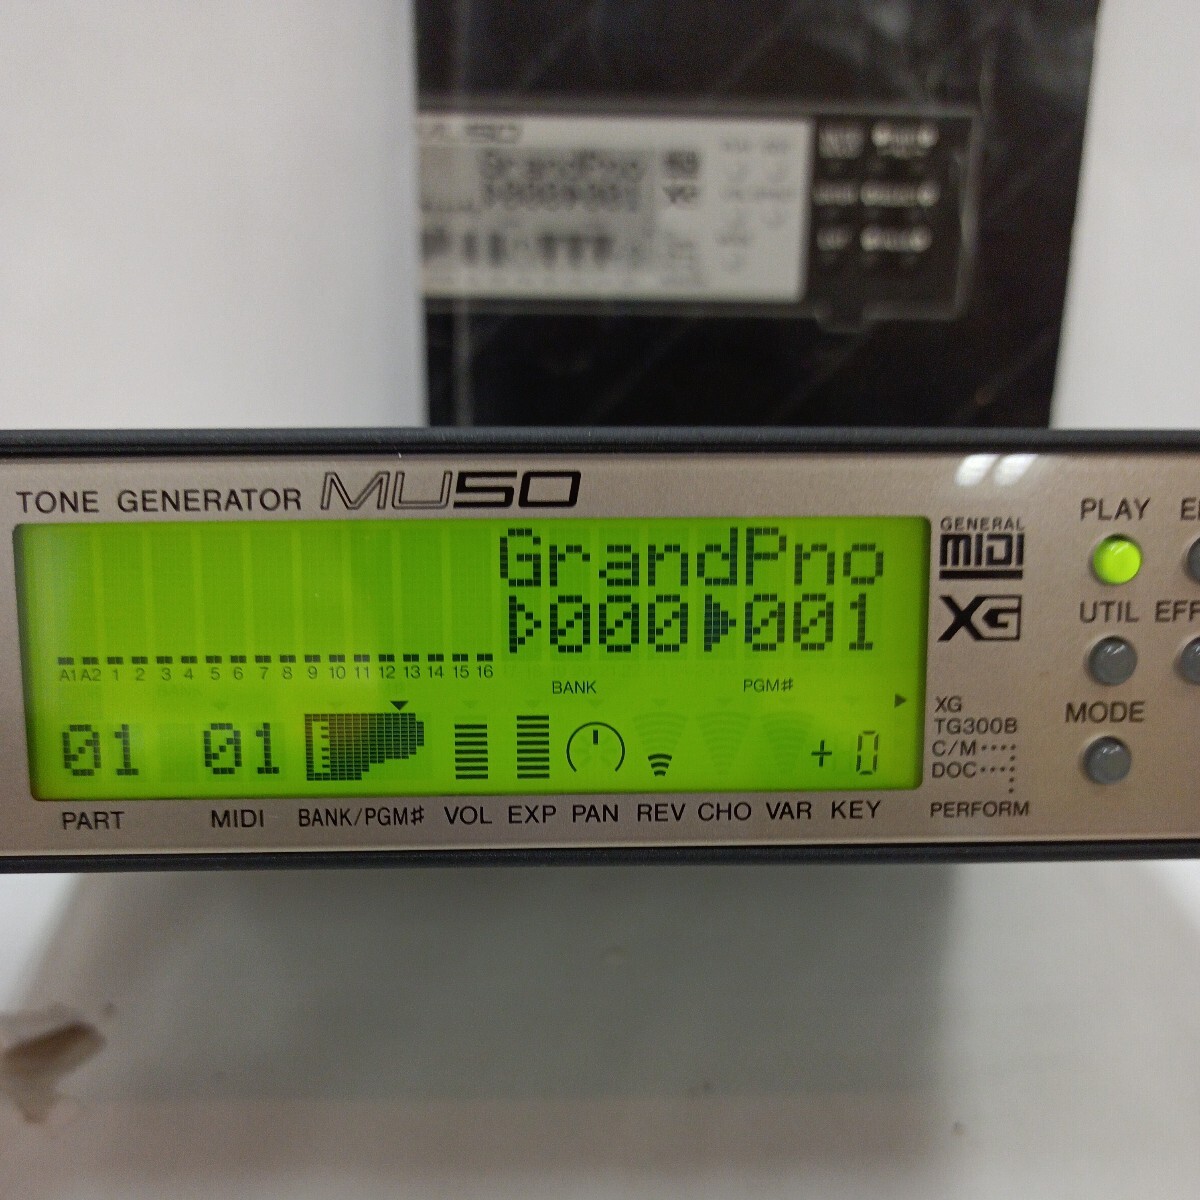 YAMAHA Yamaha цветный генератор MU50 аудио-модуль синтезатор 